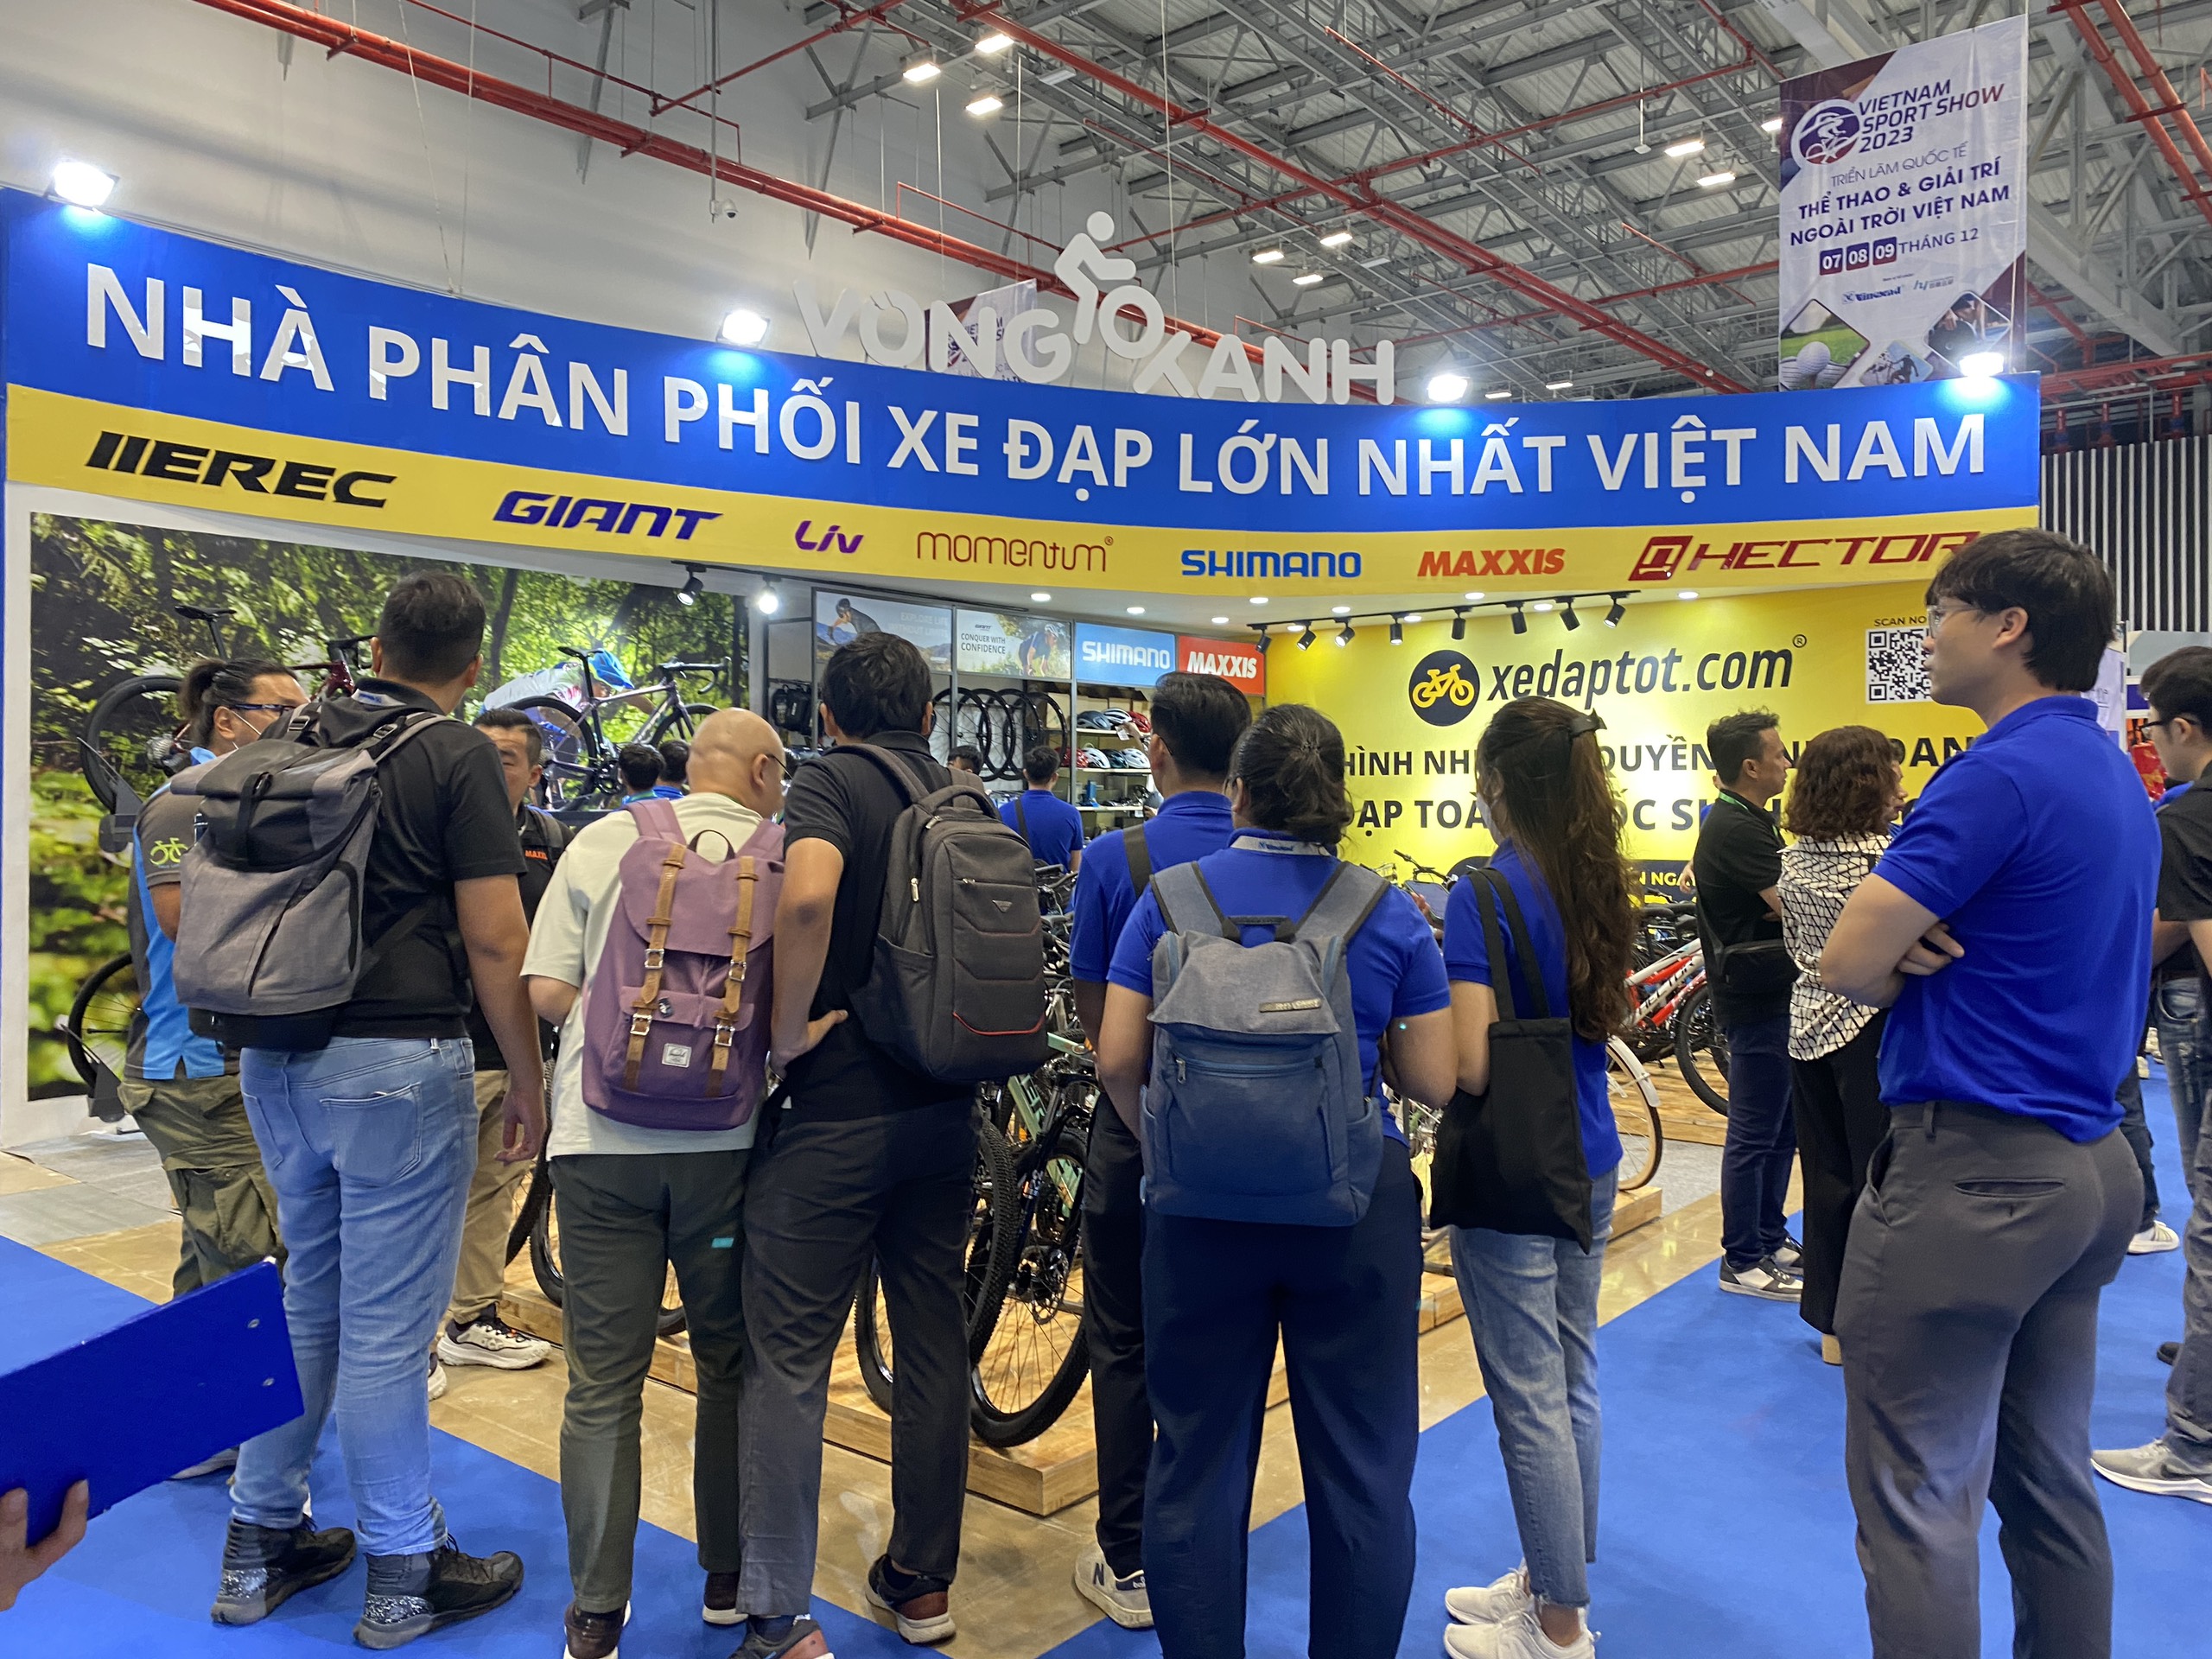 Khai mạc Vietnam Expo - Hội chợ thương mại Quốc tế hàng đầu Việt Nam
